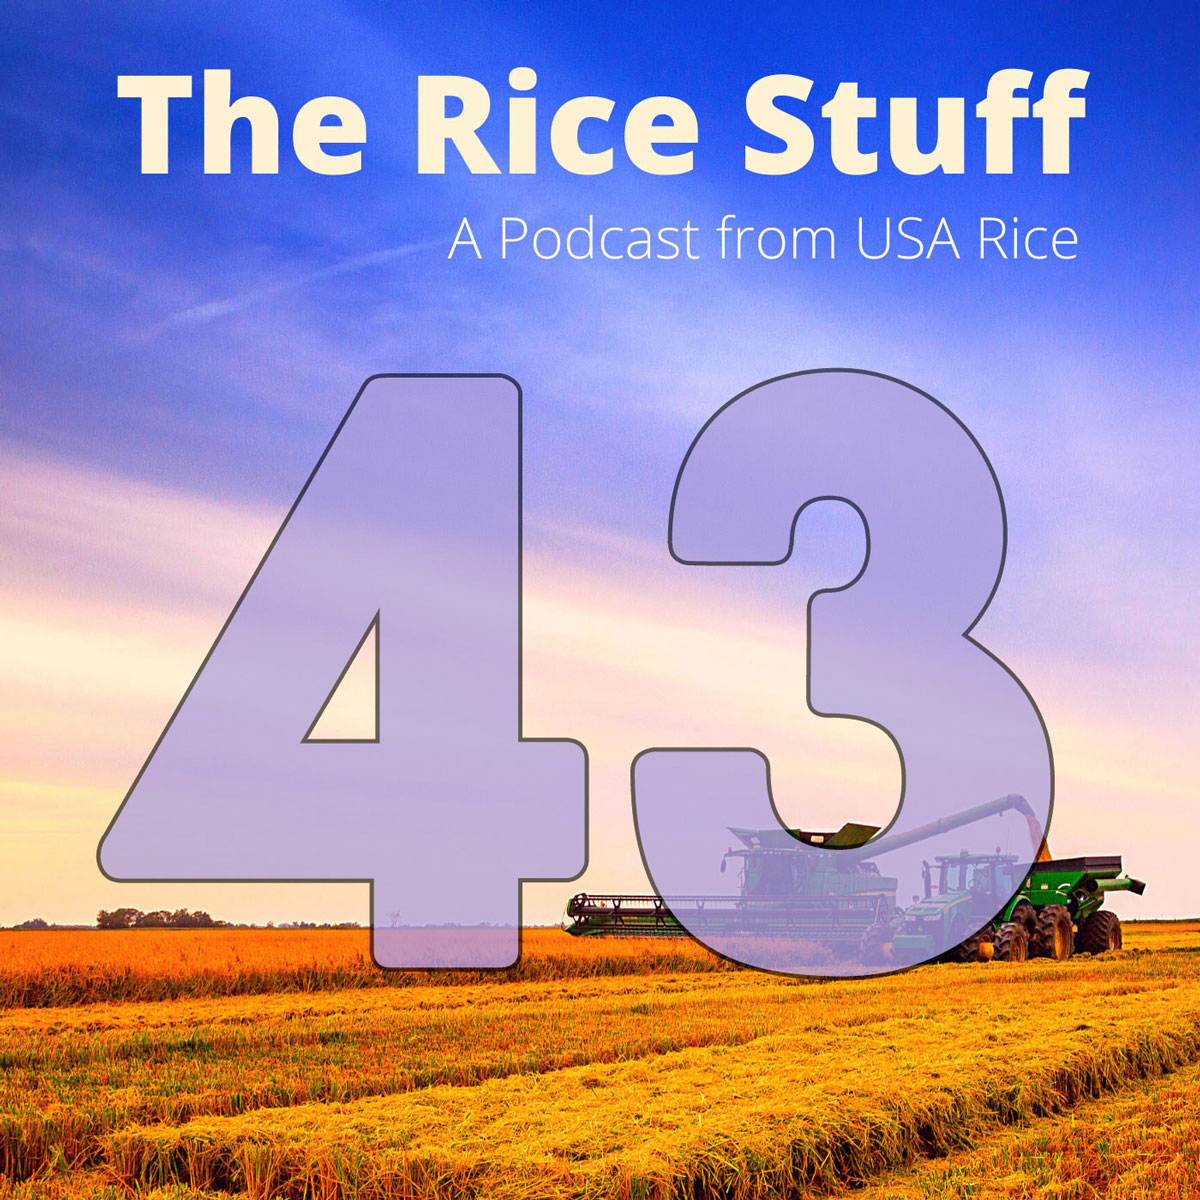 “稻米之事”播客探讨气候政策对稻米的影响 pic